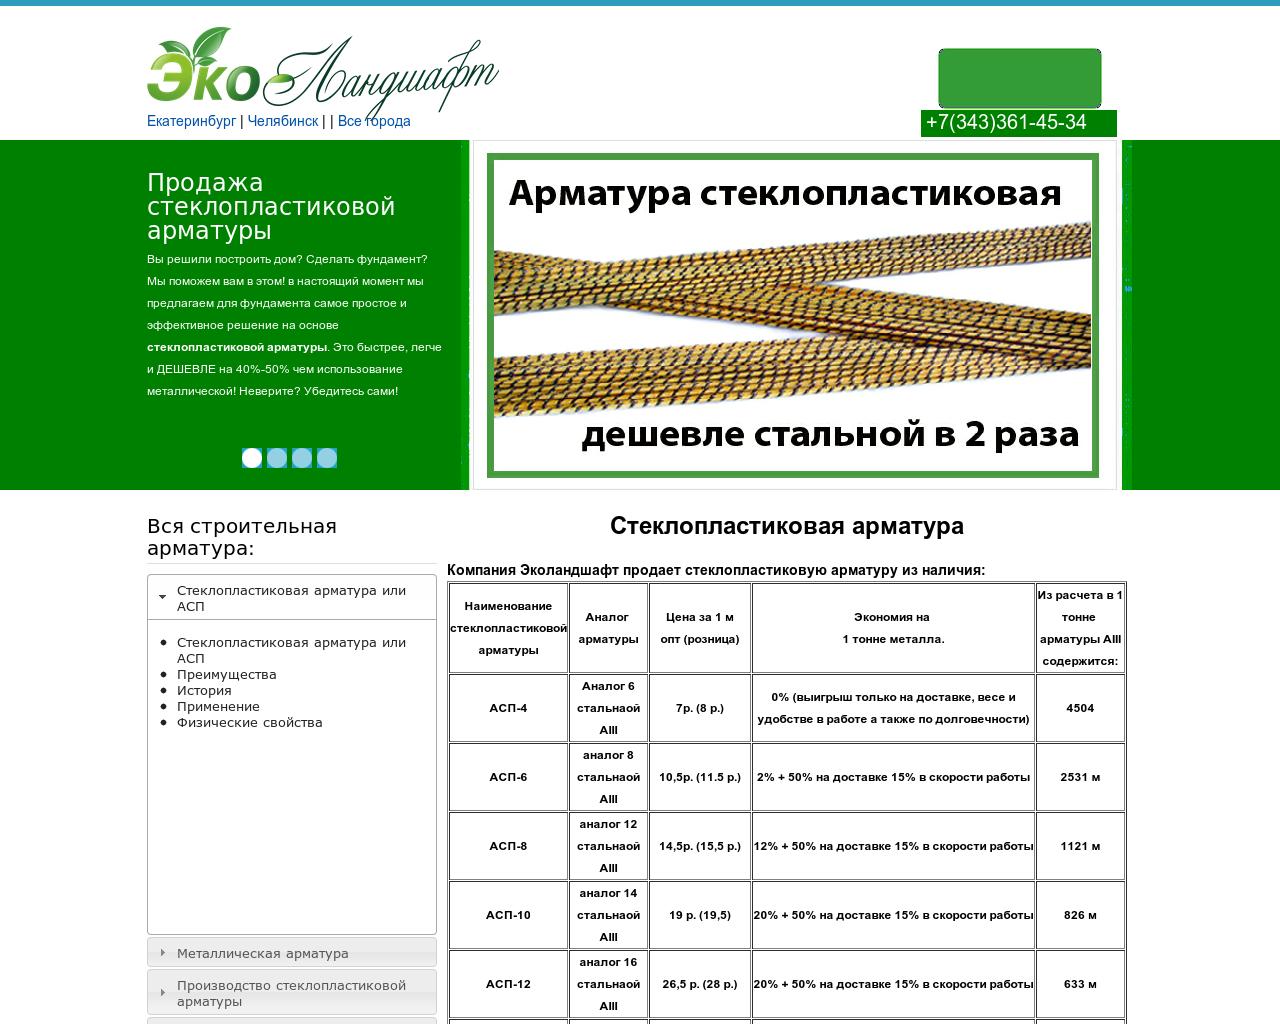 Изображение сайта ekoekat.ru в разрешении 1280x1024